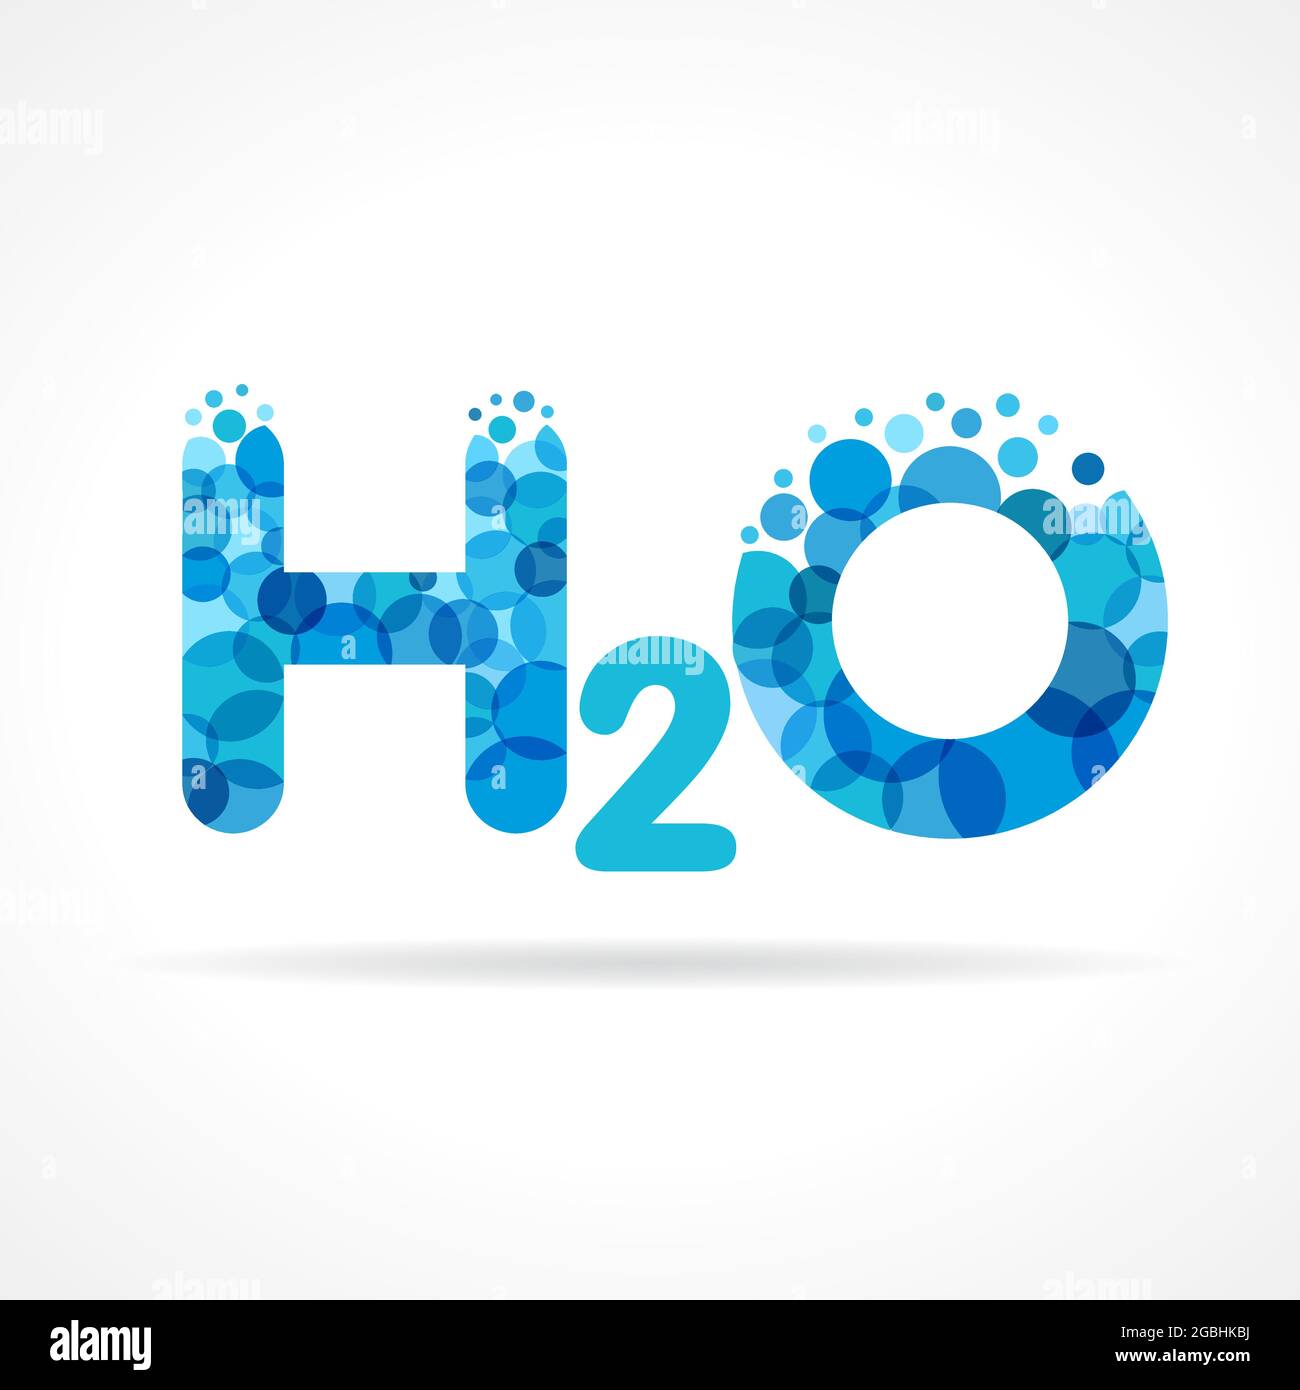 Concept de logotype H 2 O. Conception abstraite isolée. Modèle graphique bleu de formule d'eau H2O. Bouquet de bulles d'alcool pures et claires. Santé de l'entreprise Illustration de Vecteur